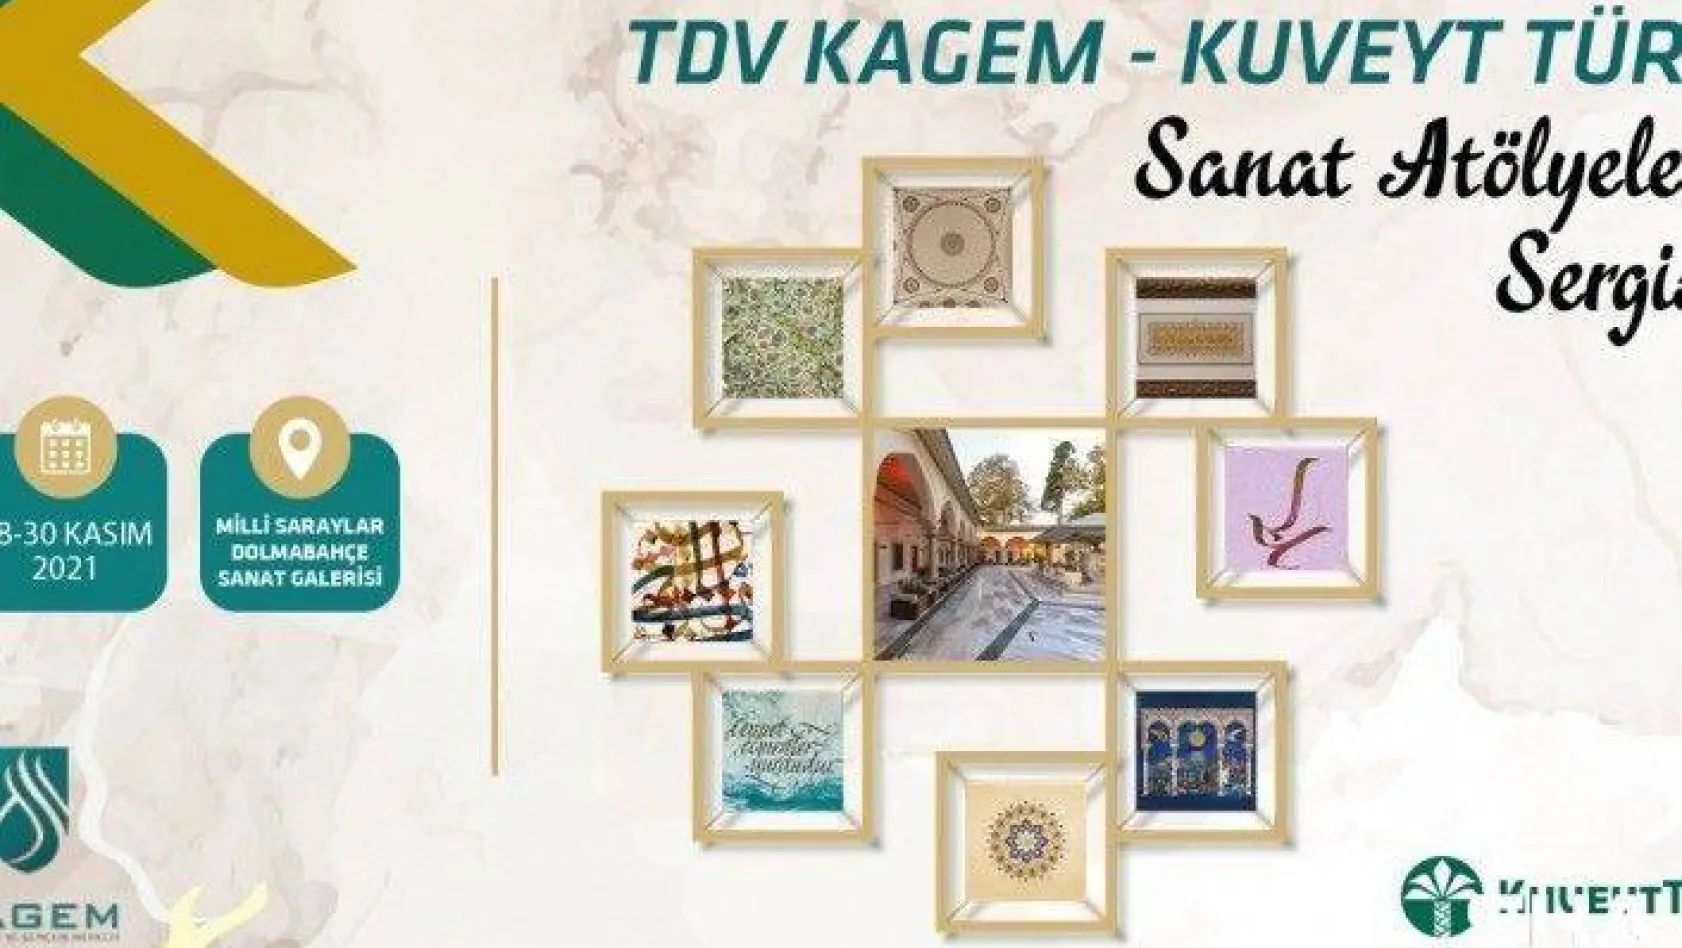 TDV KAGEM - Kuveyt Türk Sanat Atölyeleri Sergisi kapılarını sanatseverlere açtı